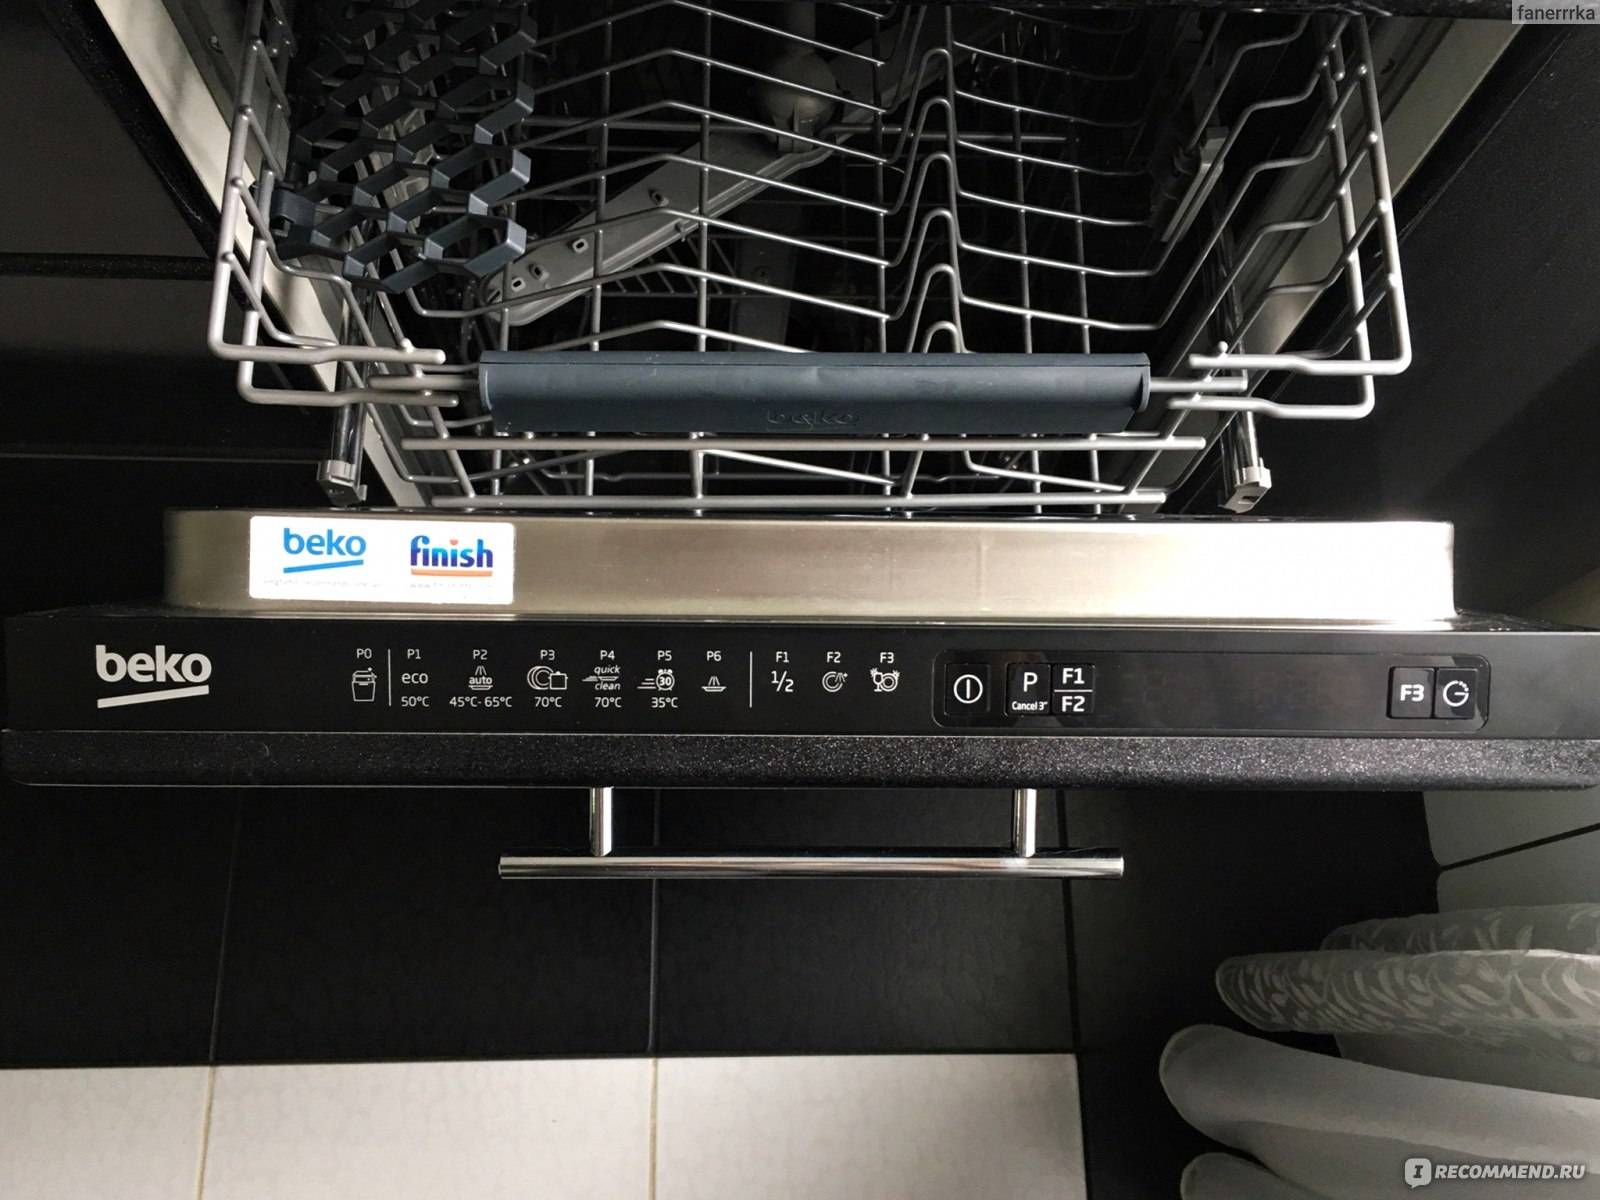 Посудомоечная машина beko — отзывы